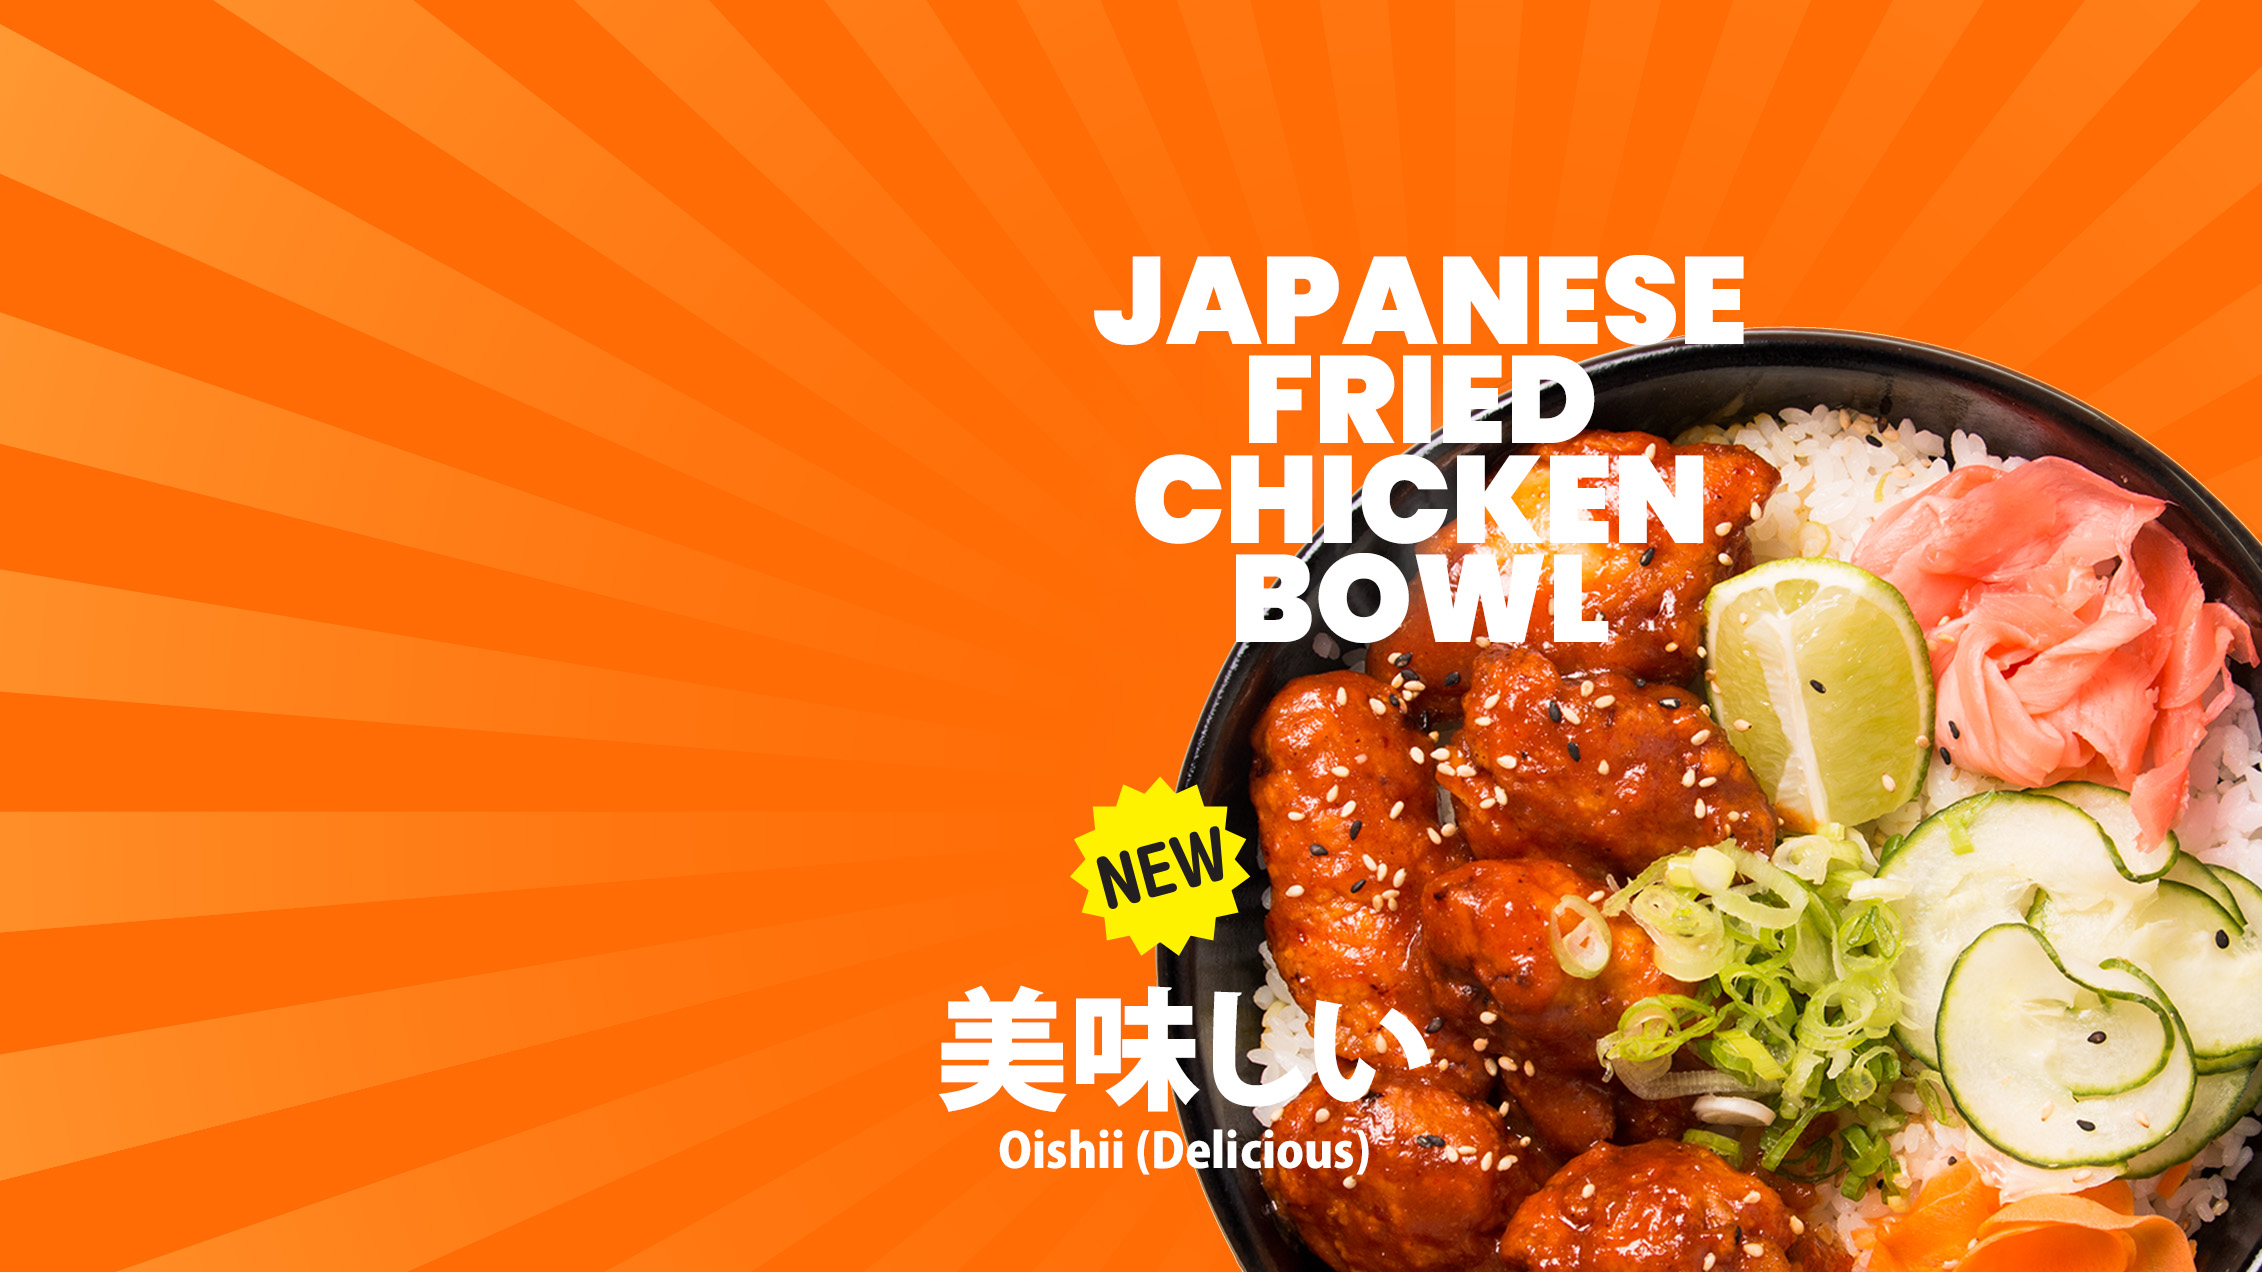 Japanese friend chicken bowlx